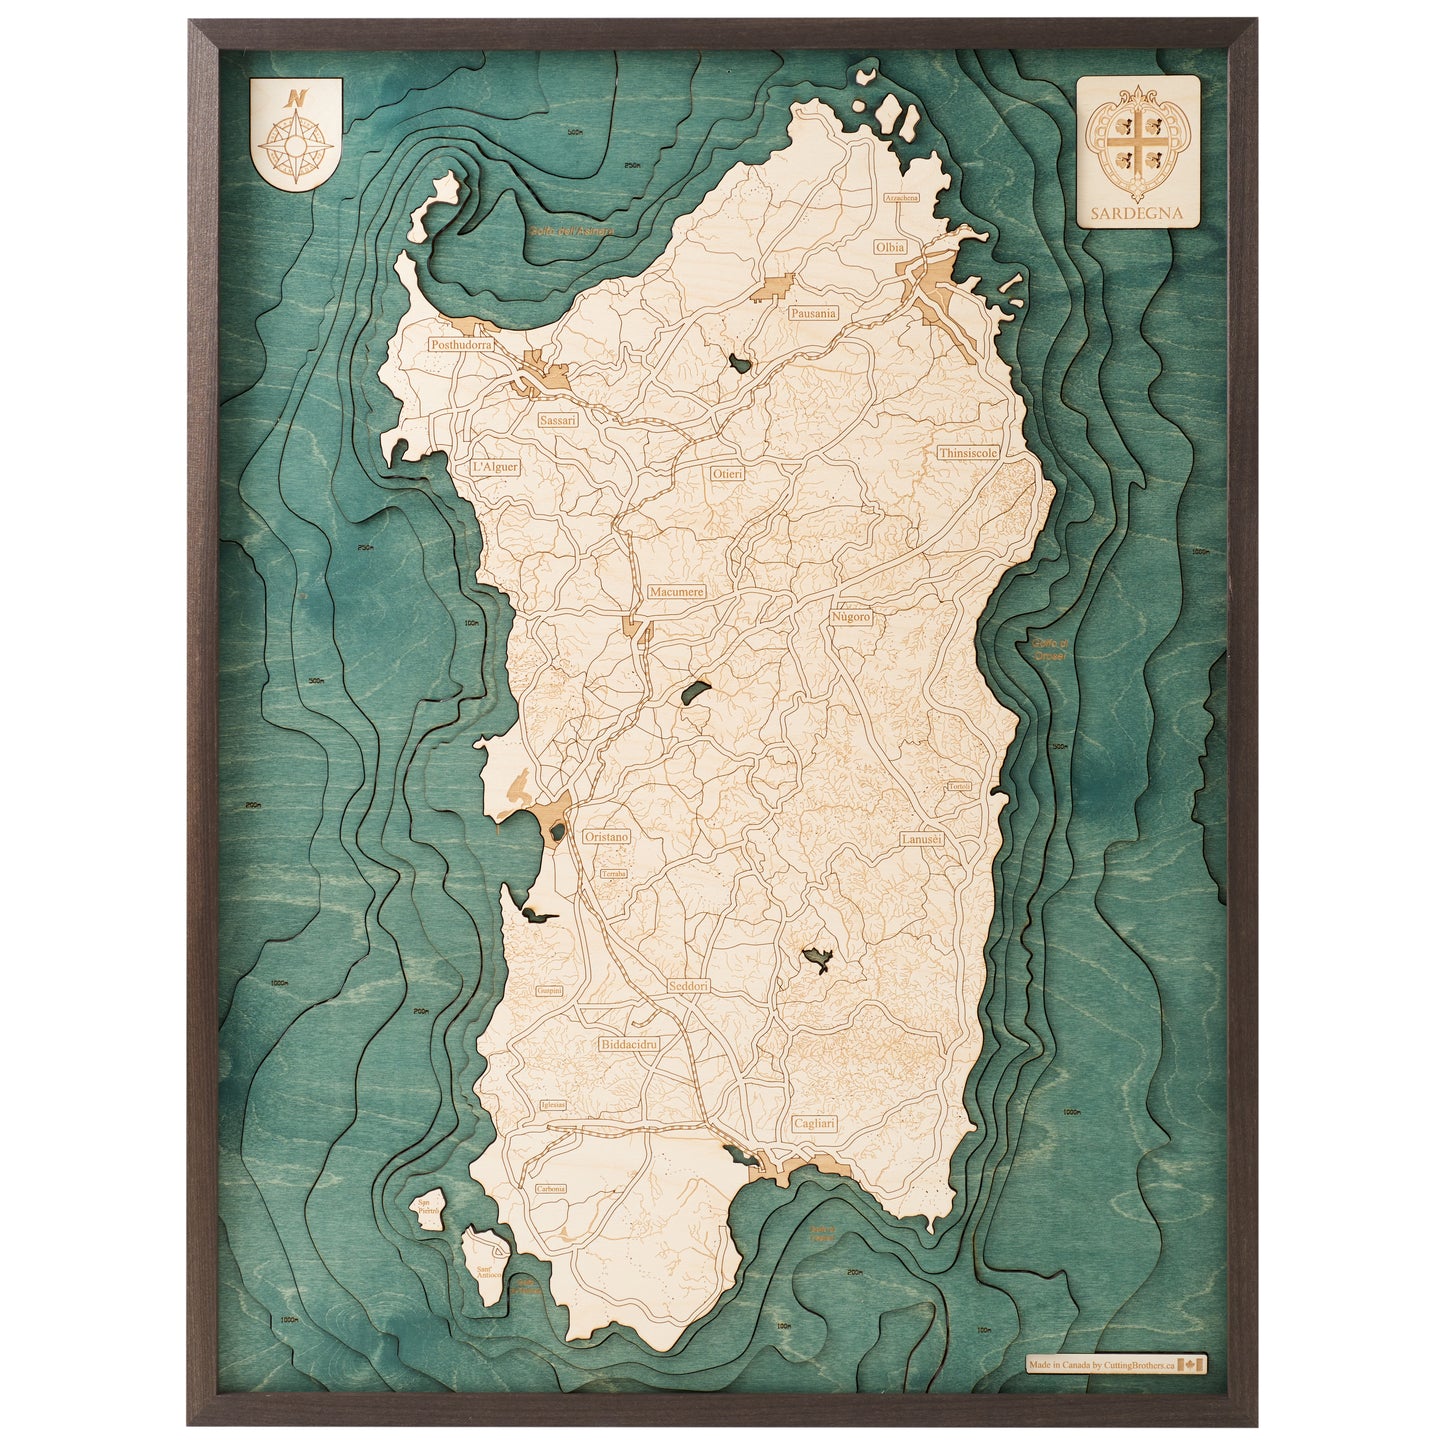 Sardinien | 3D-Holzkarte aus Holz von Cutting Brothers als Wandbild